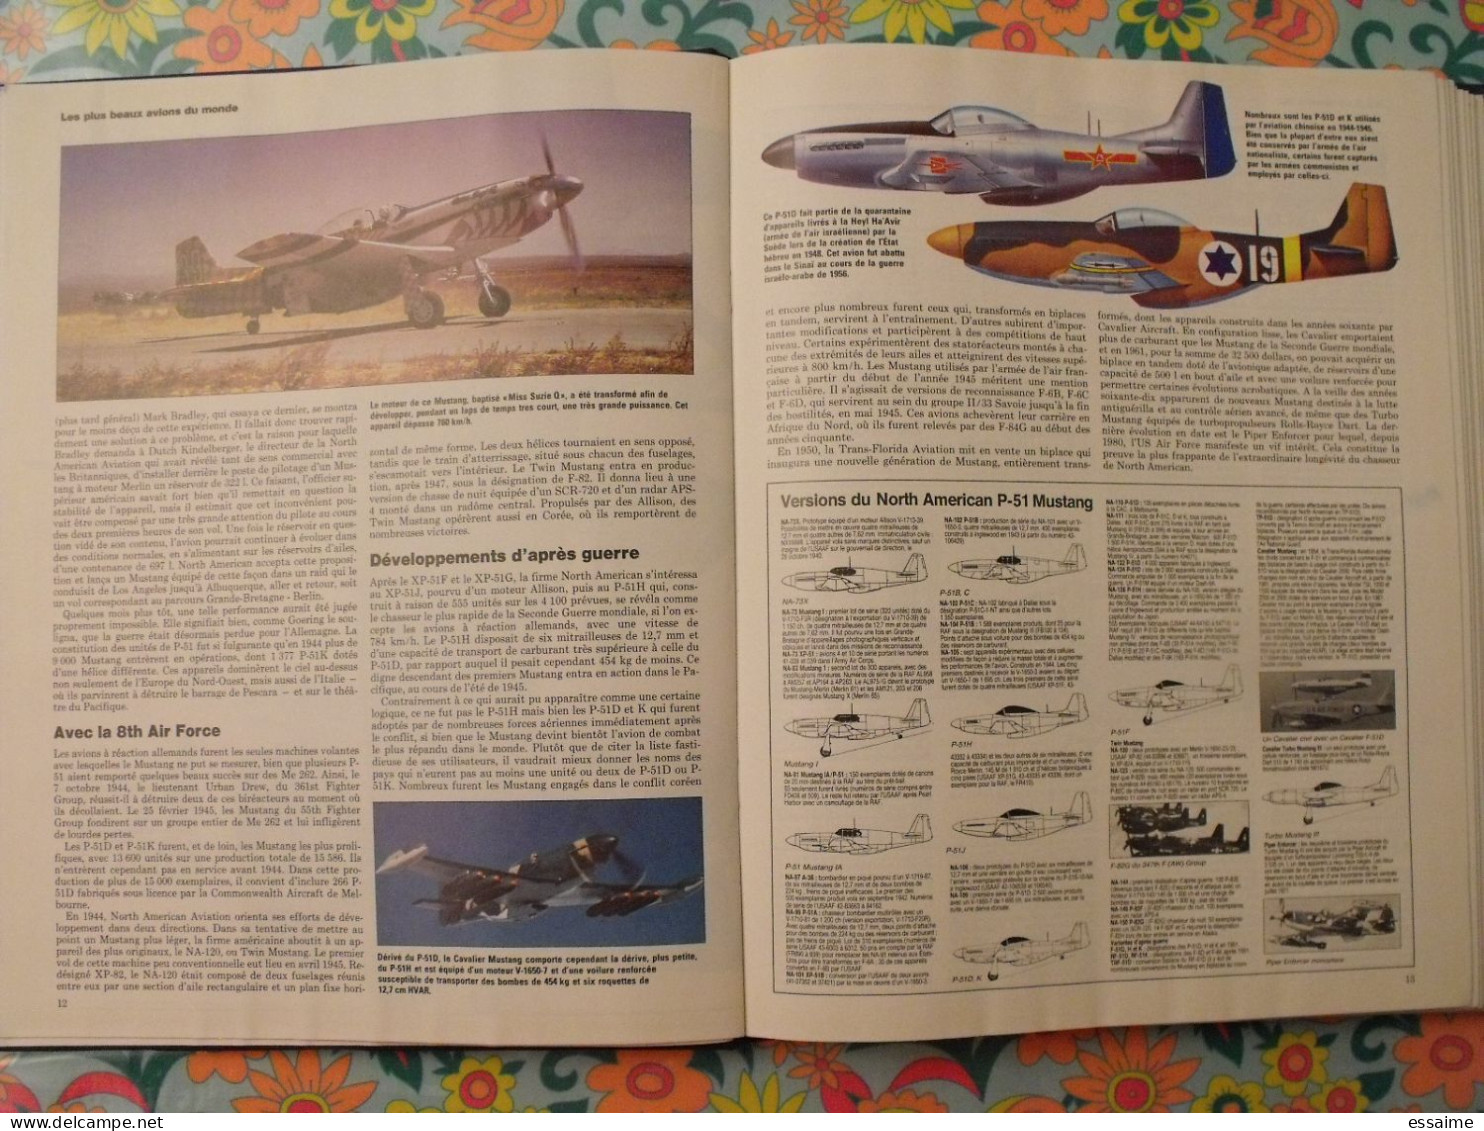 l'encyclopédie illustrée de l'aviation. volume 1. éditions Atlas 1982. contient 13 numéros